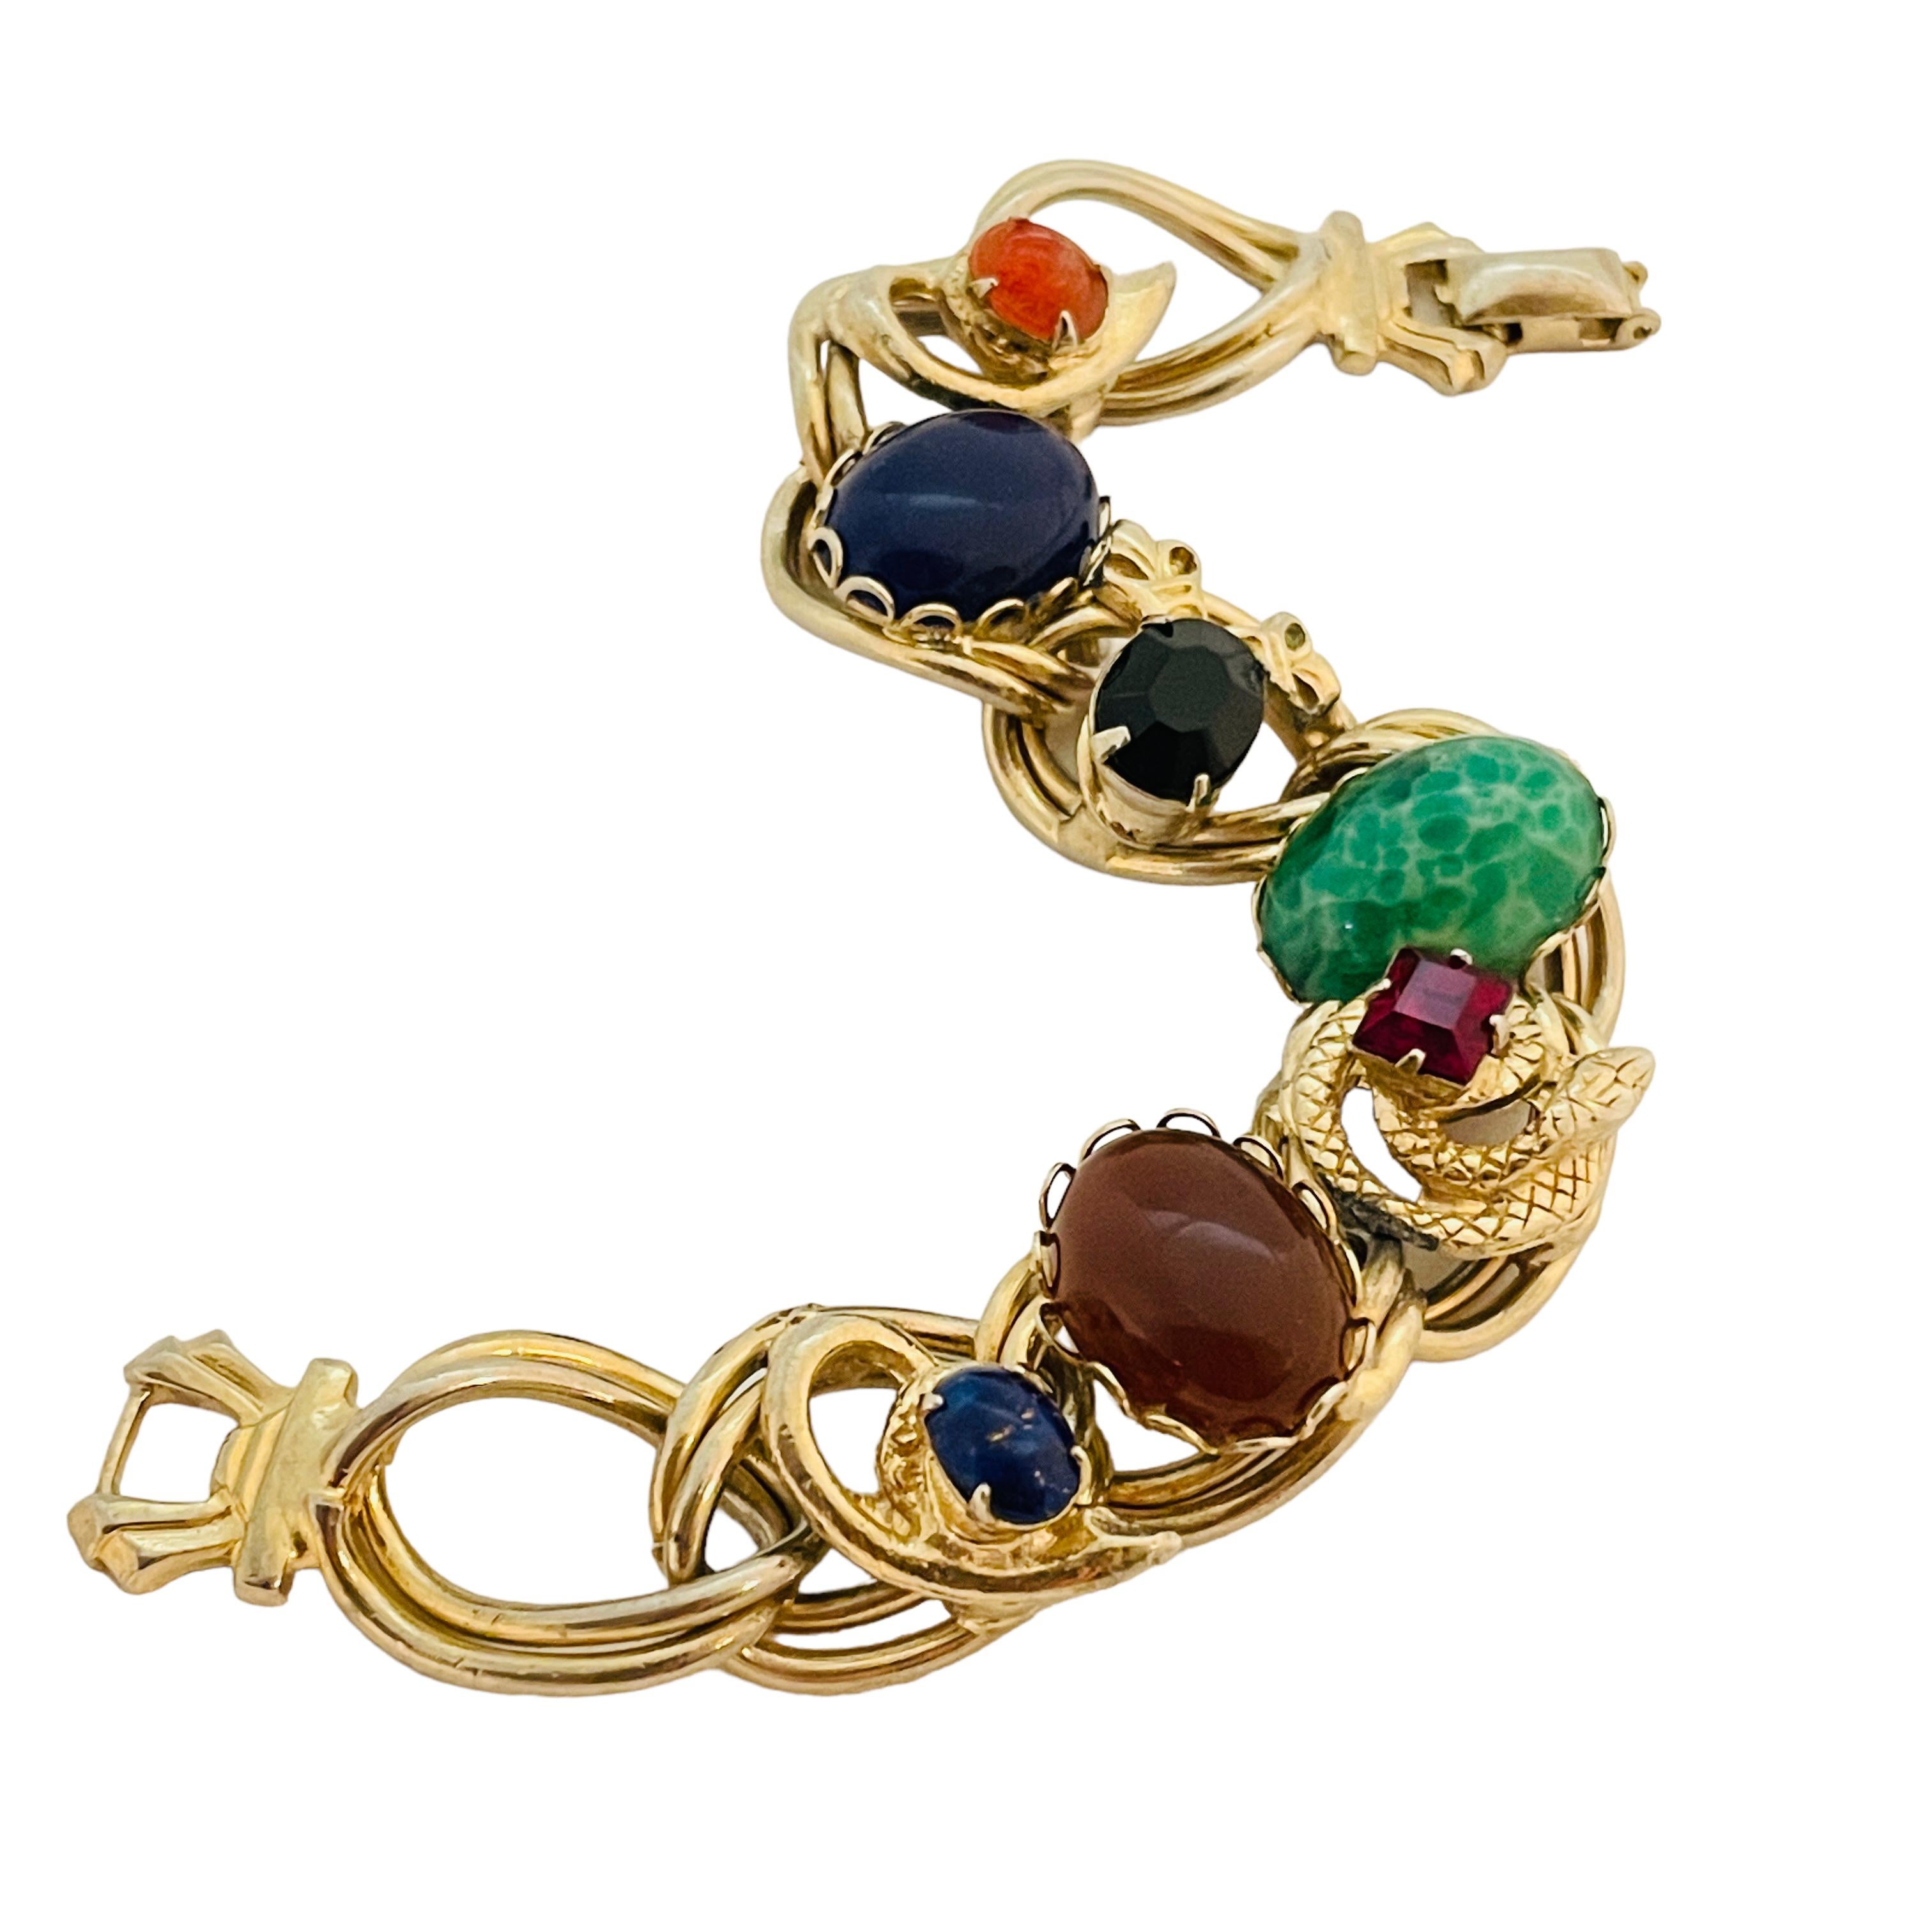 DETAILS

• unsigned 

• gold tone with glass stones

• vintage designer bracelet

MEASUREMENTS

• 7.55